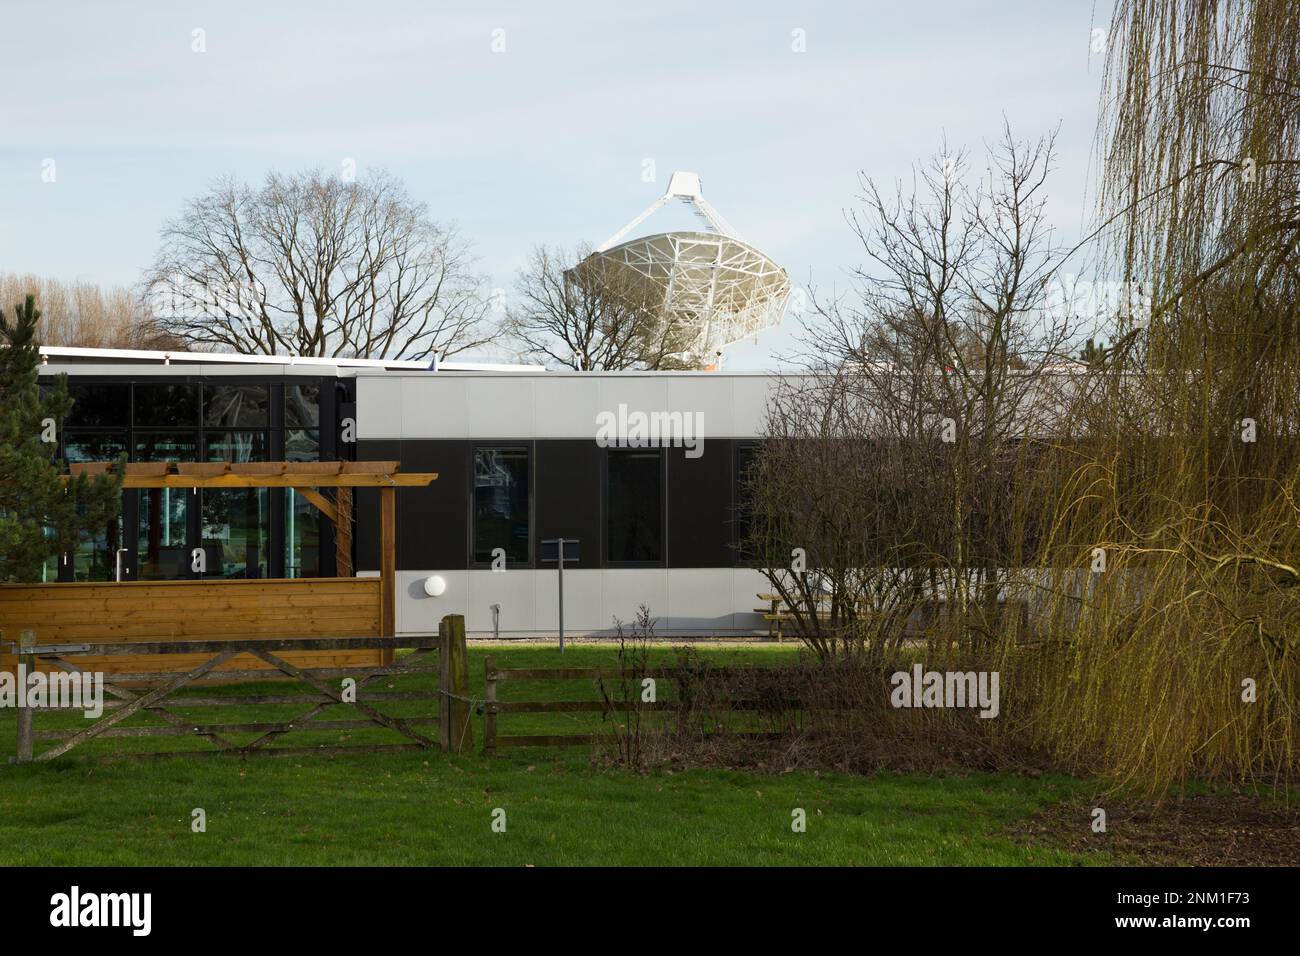 Büros der Square Kilometre Array – die SQA – mit Blick auf das Mark II (elliptische) Teleskop. Radioteleskop-Standort Jodrell Bank, Cheshire, Großbritannien. (133) Stockfoto